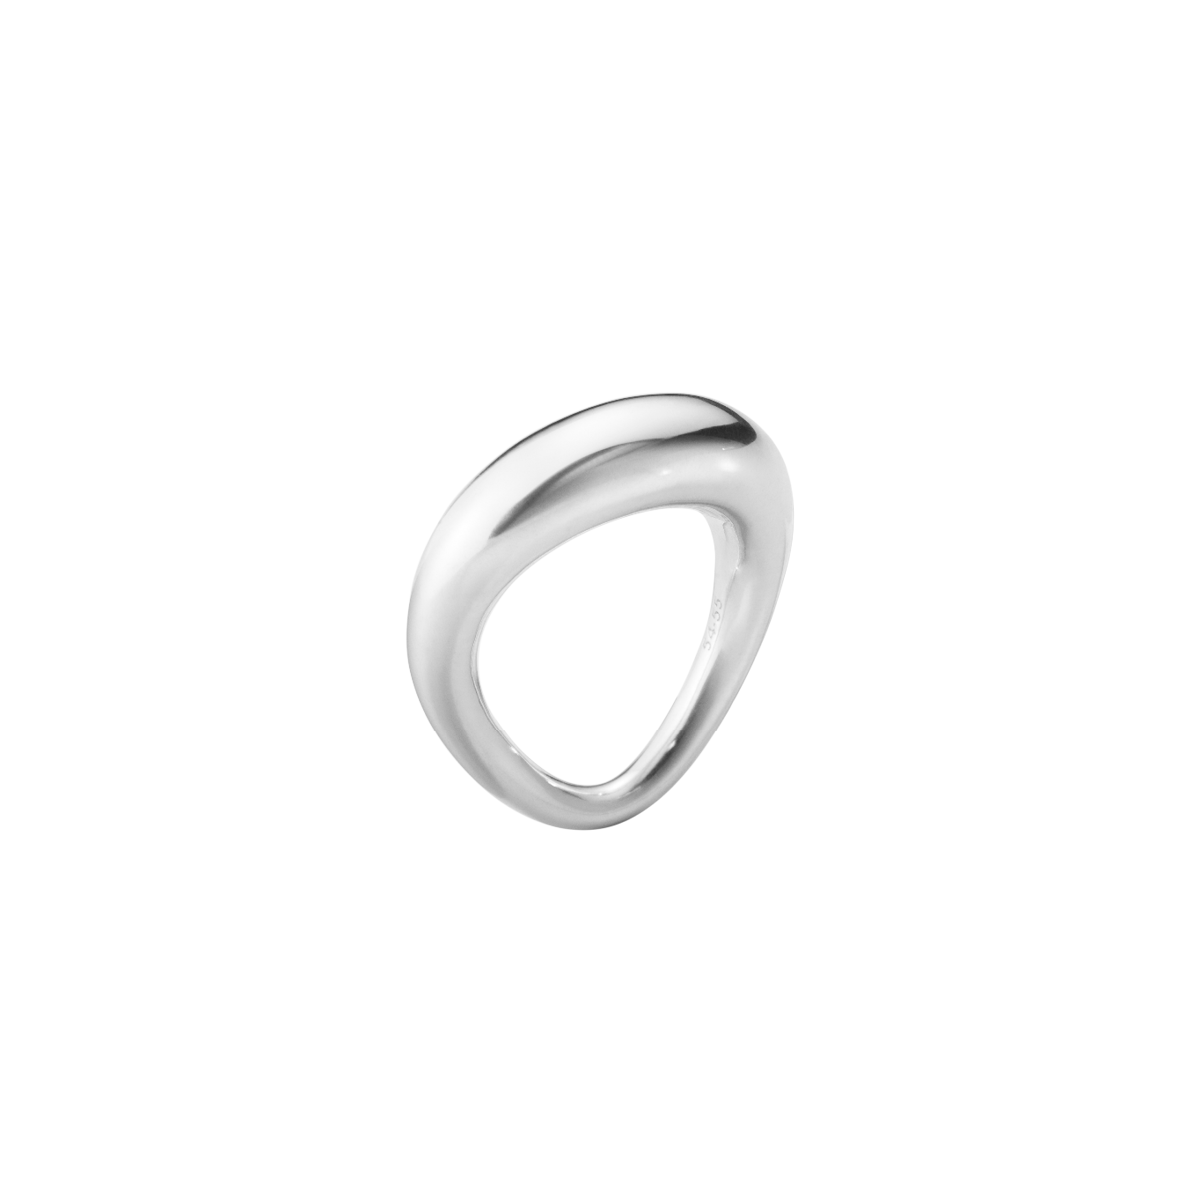 Offspring ring stor - sølv fra Georg Jensen